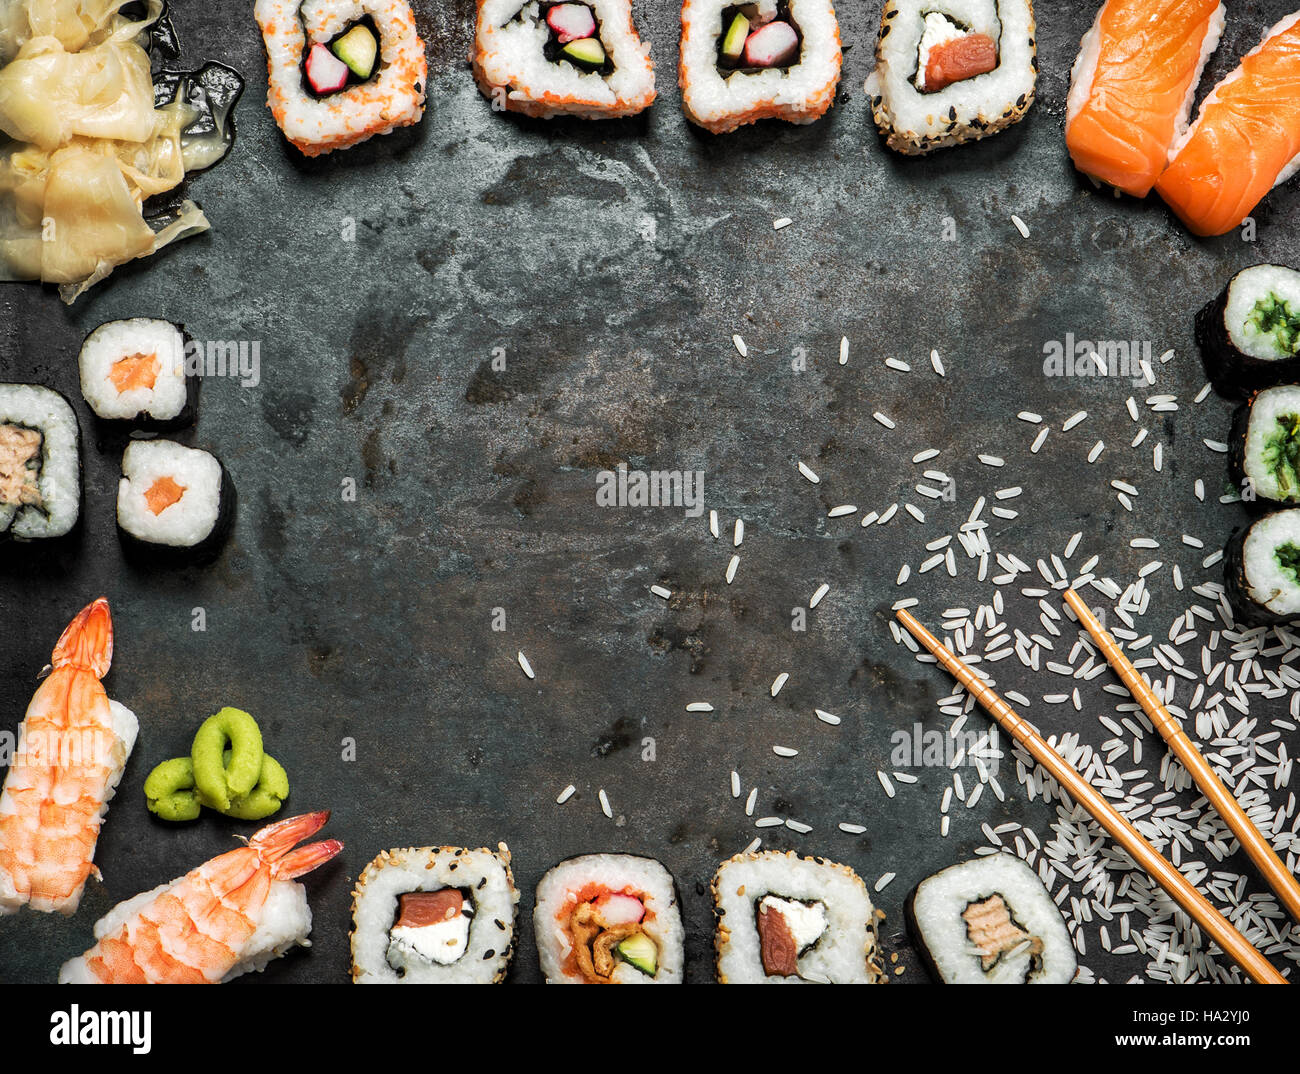 Sushi-Rollen, Maki, Nigiri, Lachs, Wasabi, Garnelen, Thunfisch, Tofu, Reis, Avocado, eingelegten Ingwer. Japanisches Essen Hintergrund. Vintage getönten Bild Stockfoto